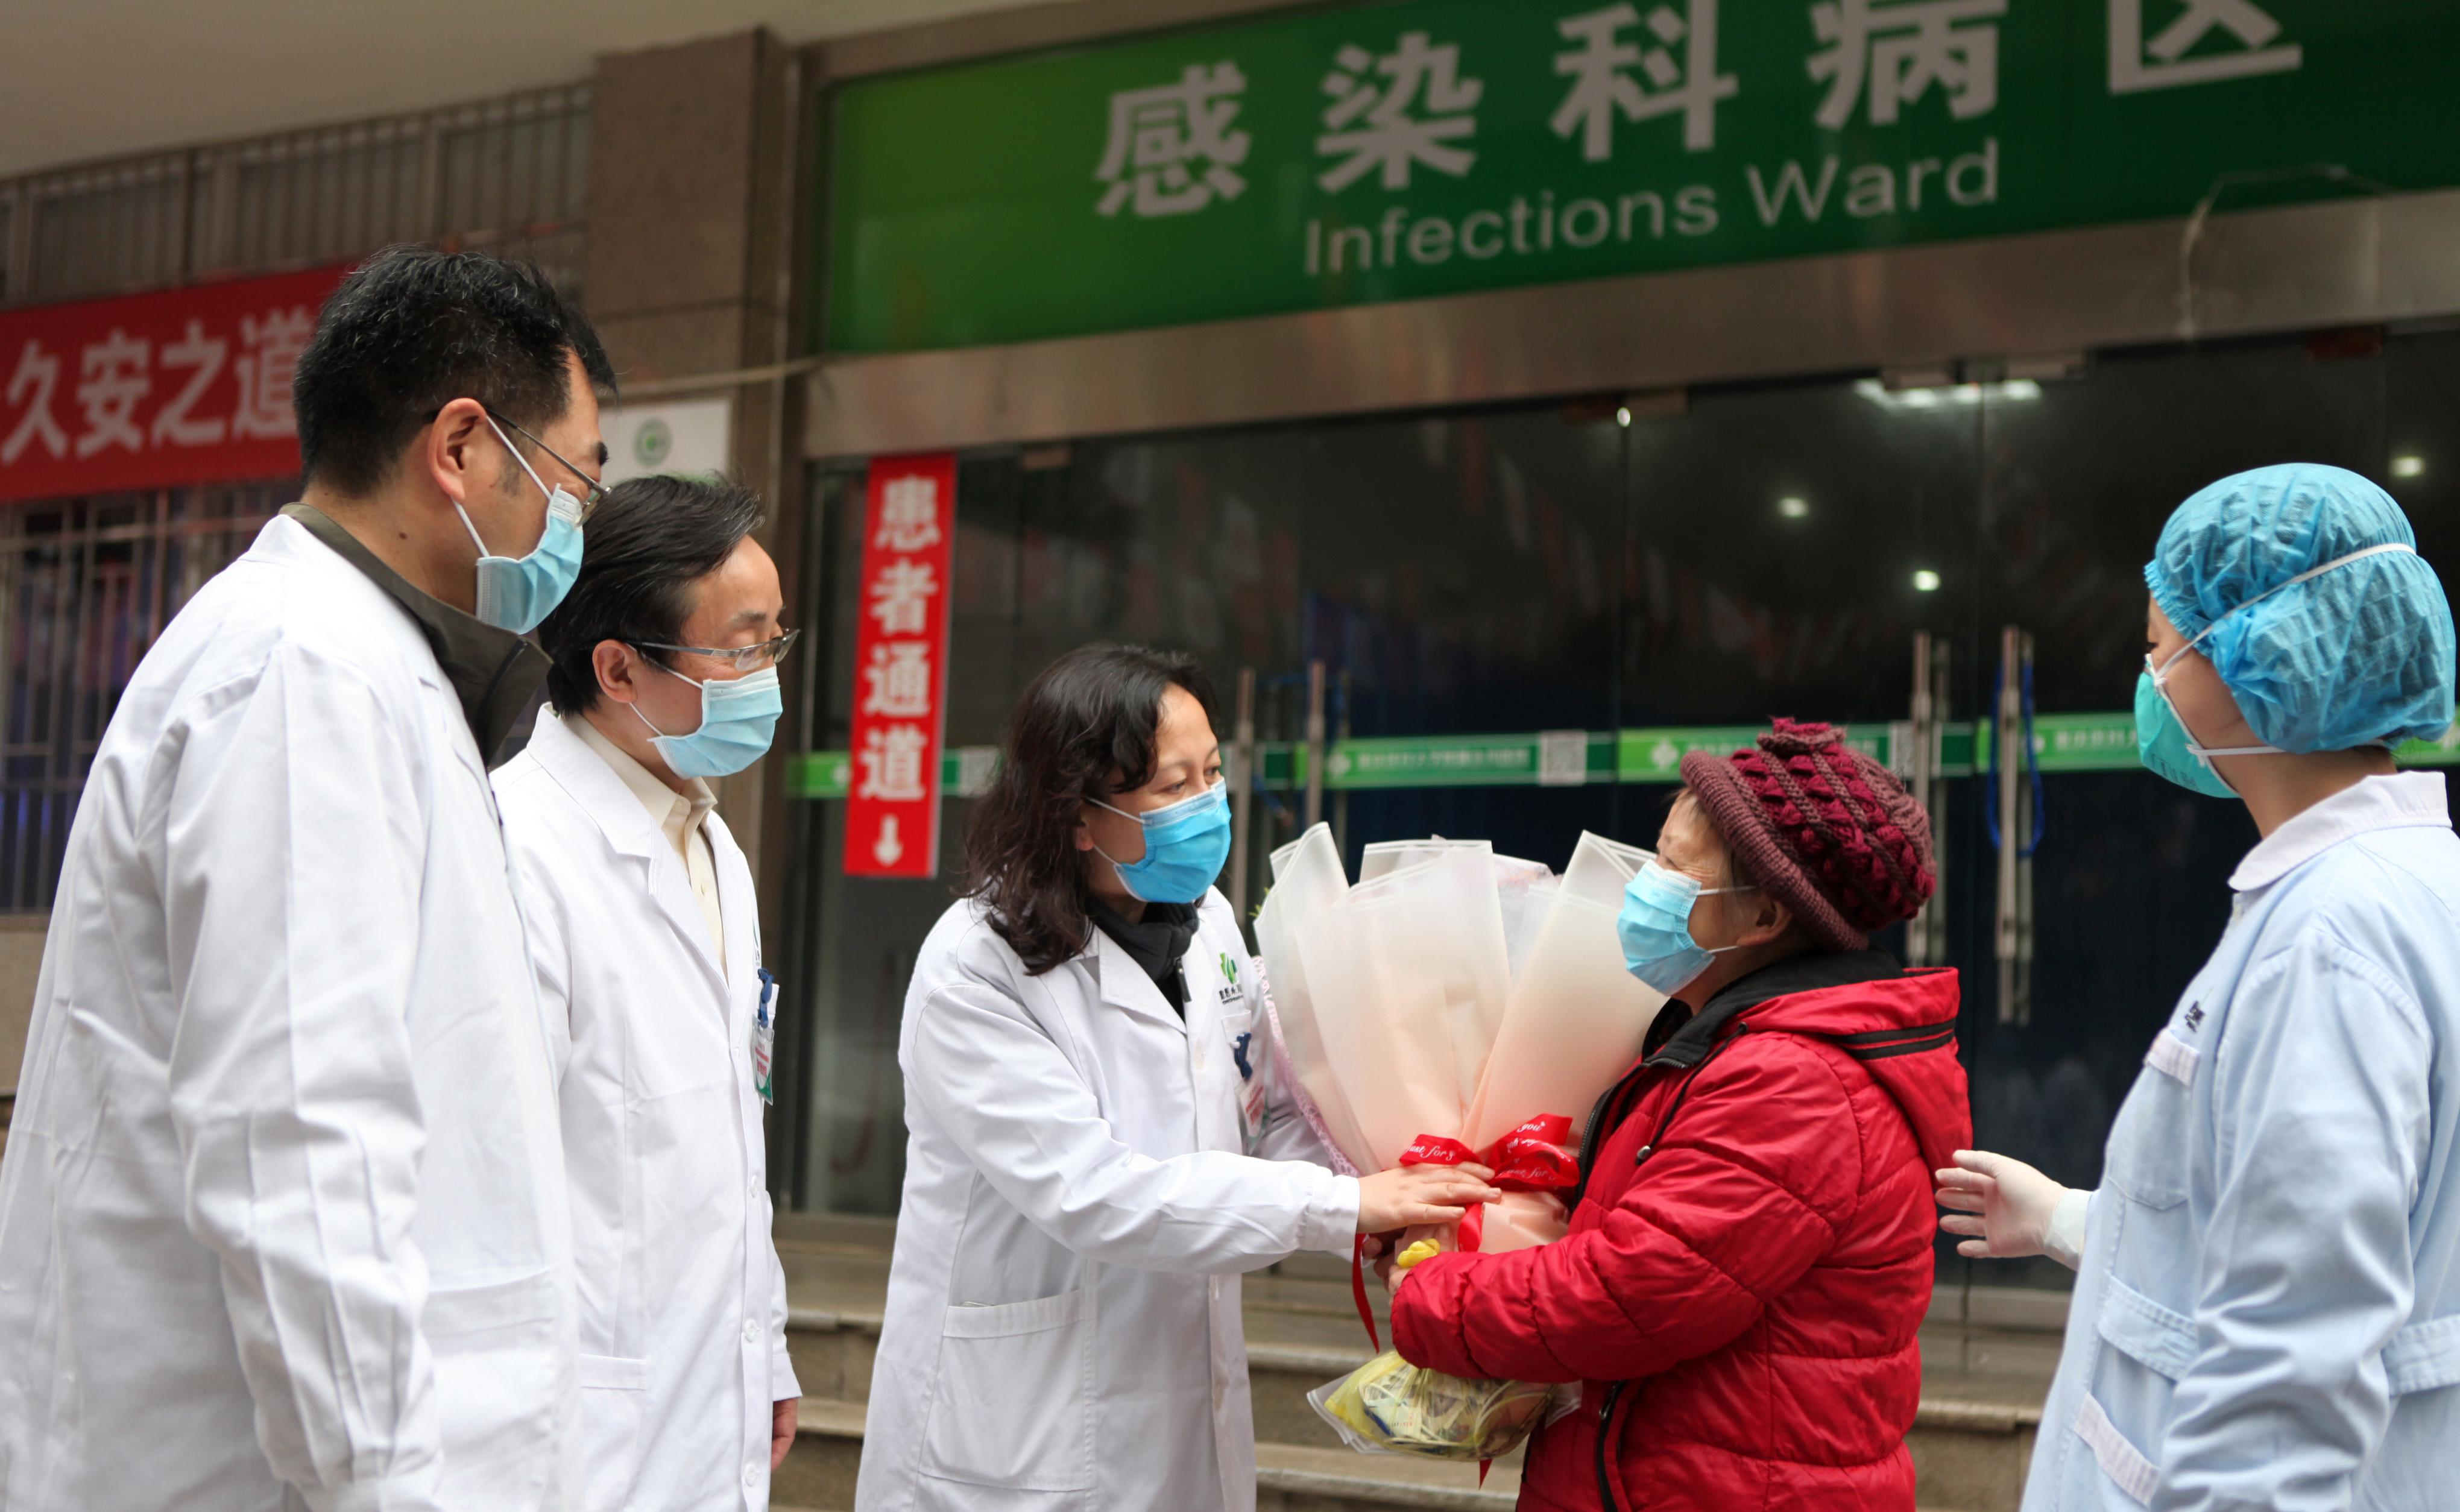  Los médicos despiden a la última infectada de coronavirus en el hospital de Chongqing, en China